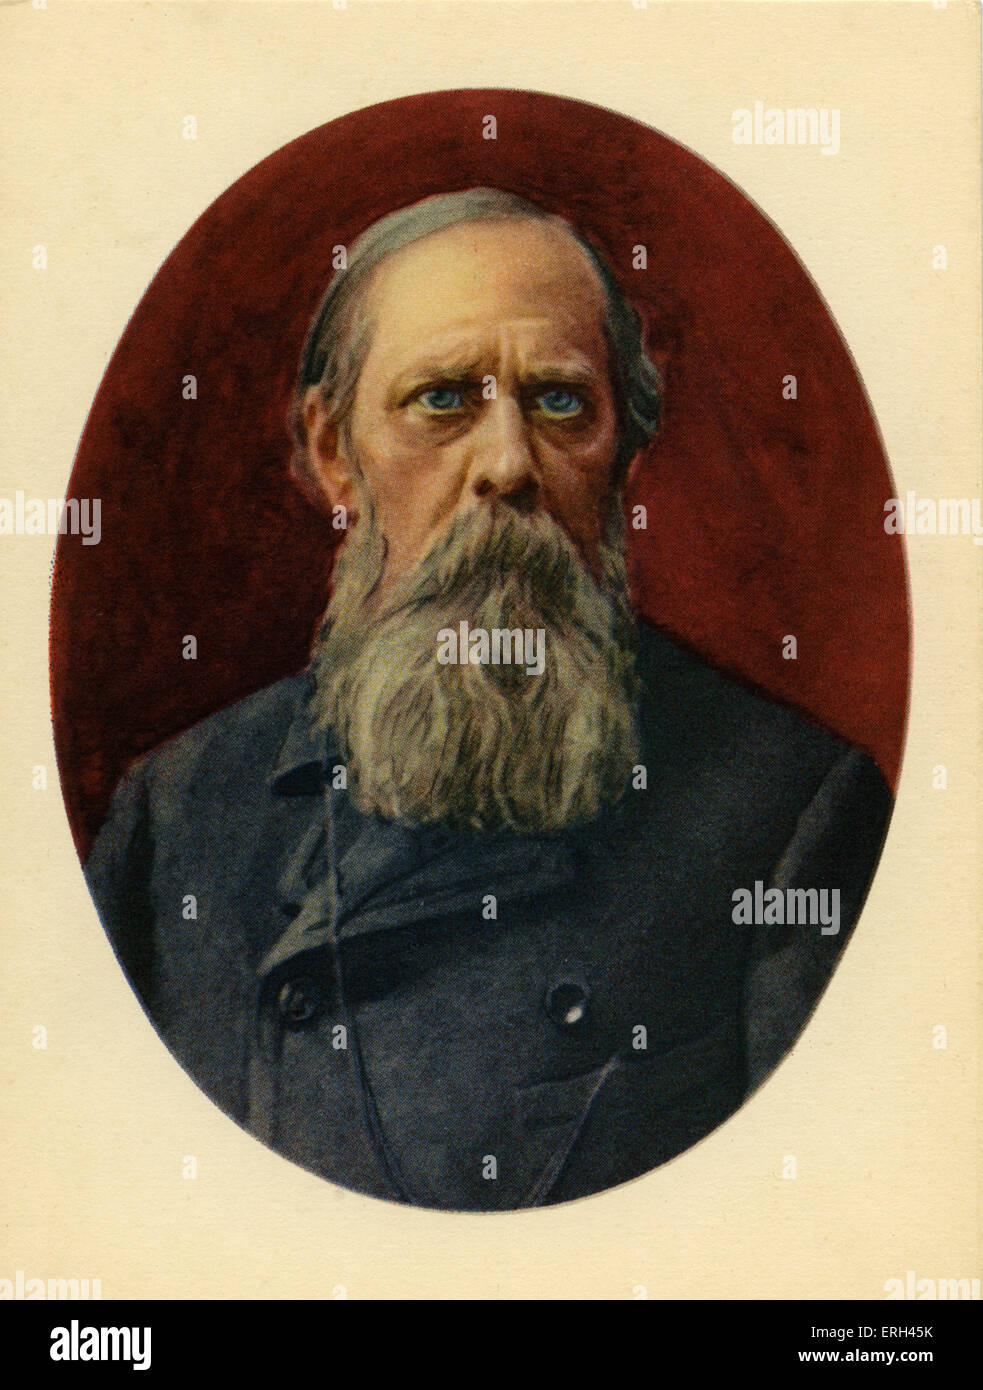 Schredin (Mikhail Saltykow-Schredin), russischer Schriftsteller und Satiriker, 27. Januar 1826-10 Mai 1889. Stockfoto